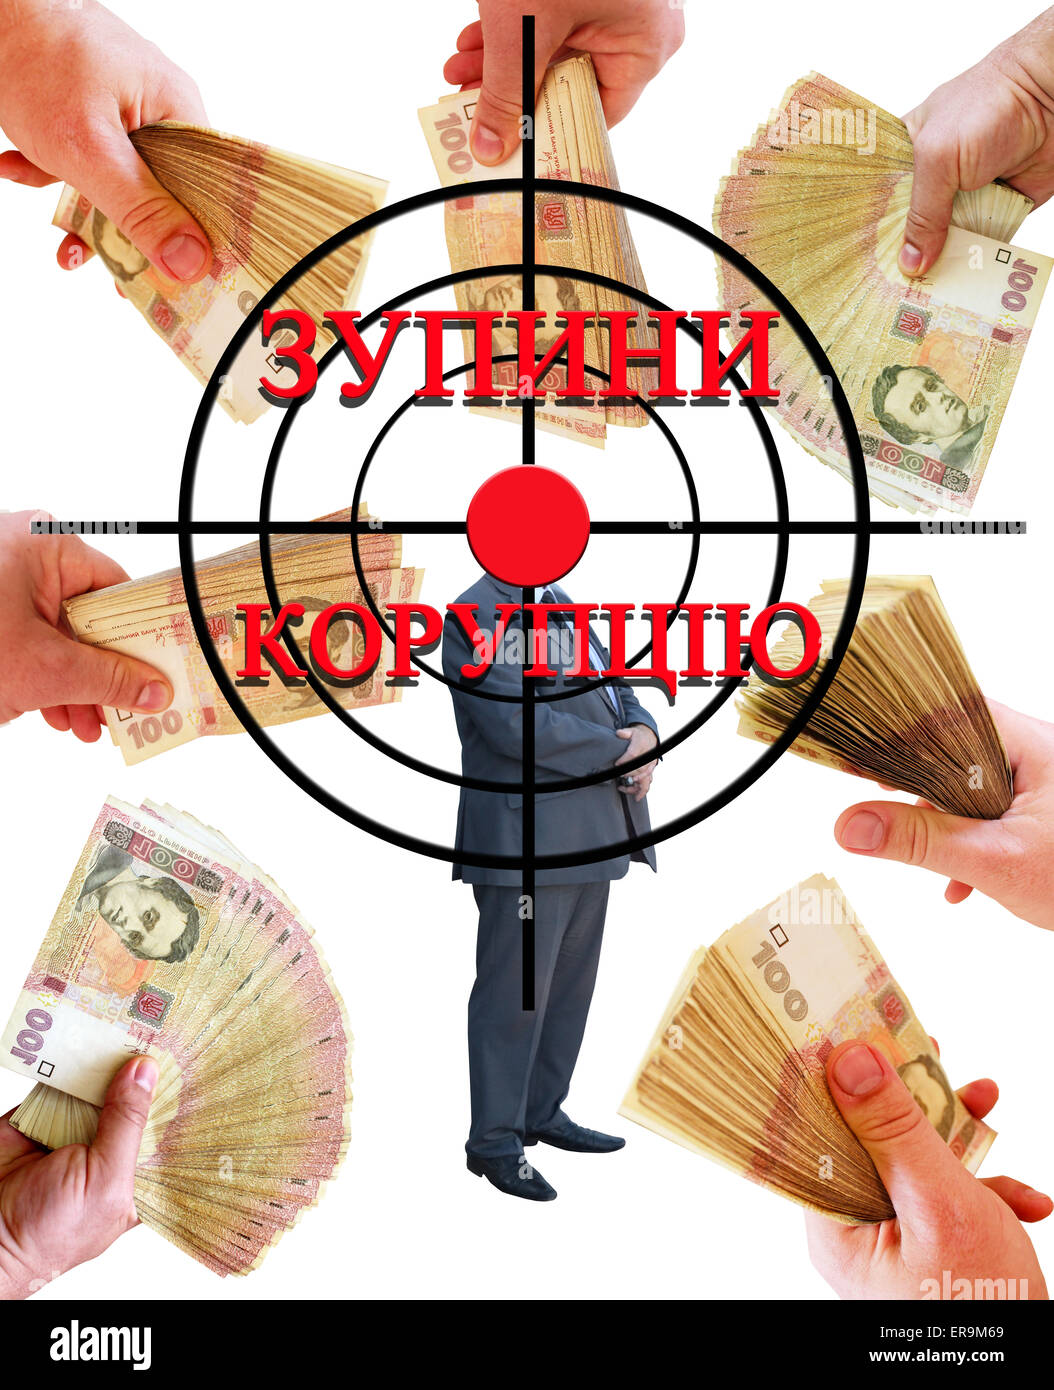 Appell Stop Korruption in ukrainischer Sprache mit Ziel- und Geld als Bestechung Stockfoto